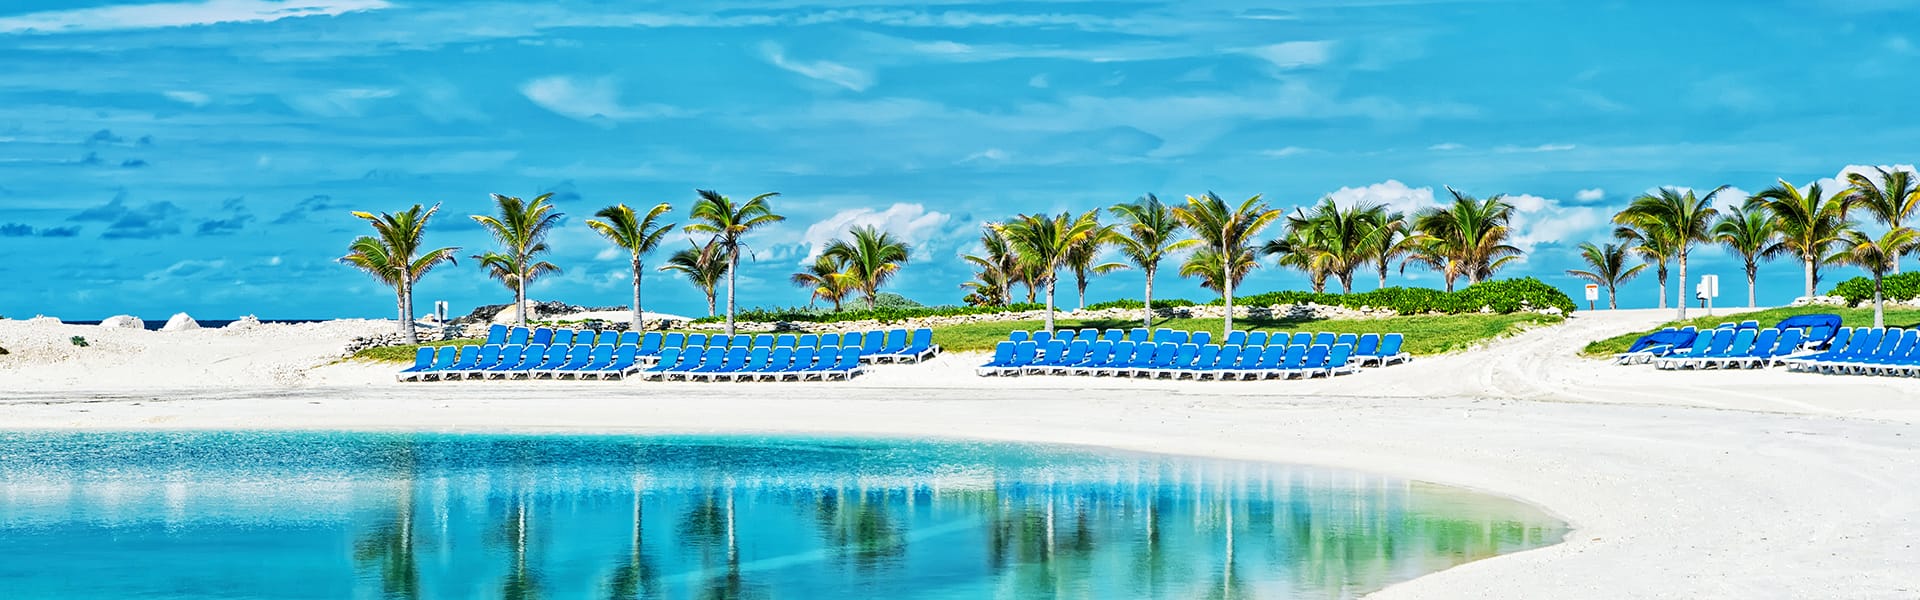 Bahamas: Great Stirrup Cay, Key West und Nassau